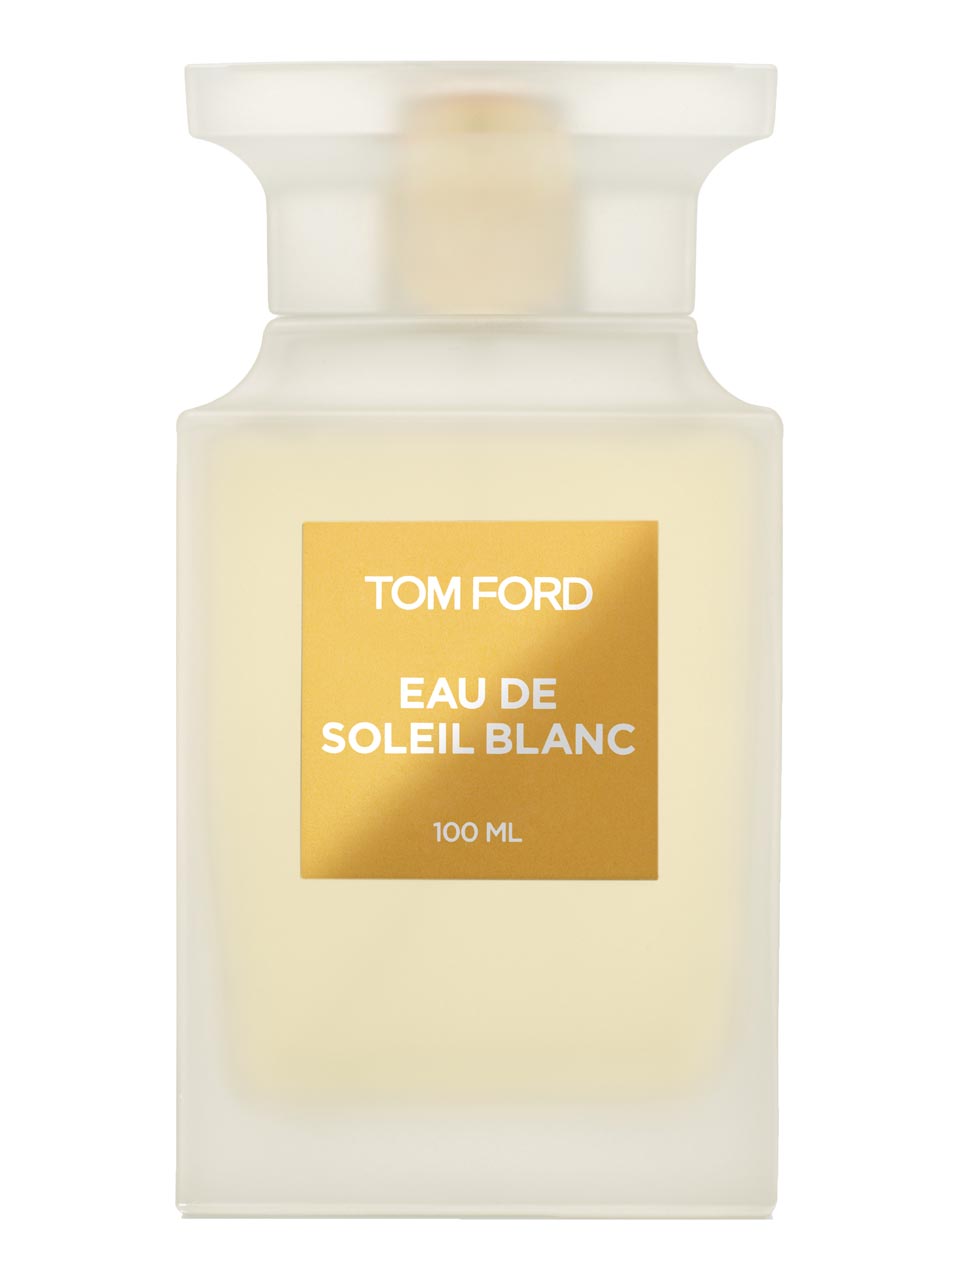 Tom Ford Eau de Soleil Blanc Eau de Toilette 100 ml null - onesize - 1